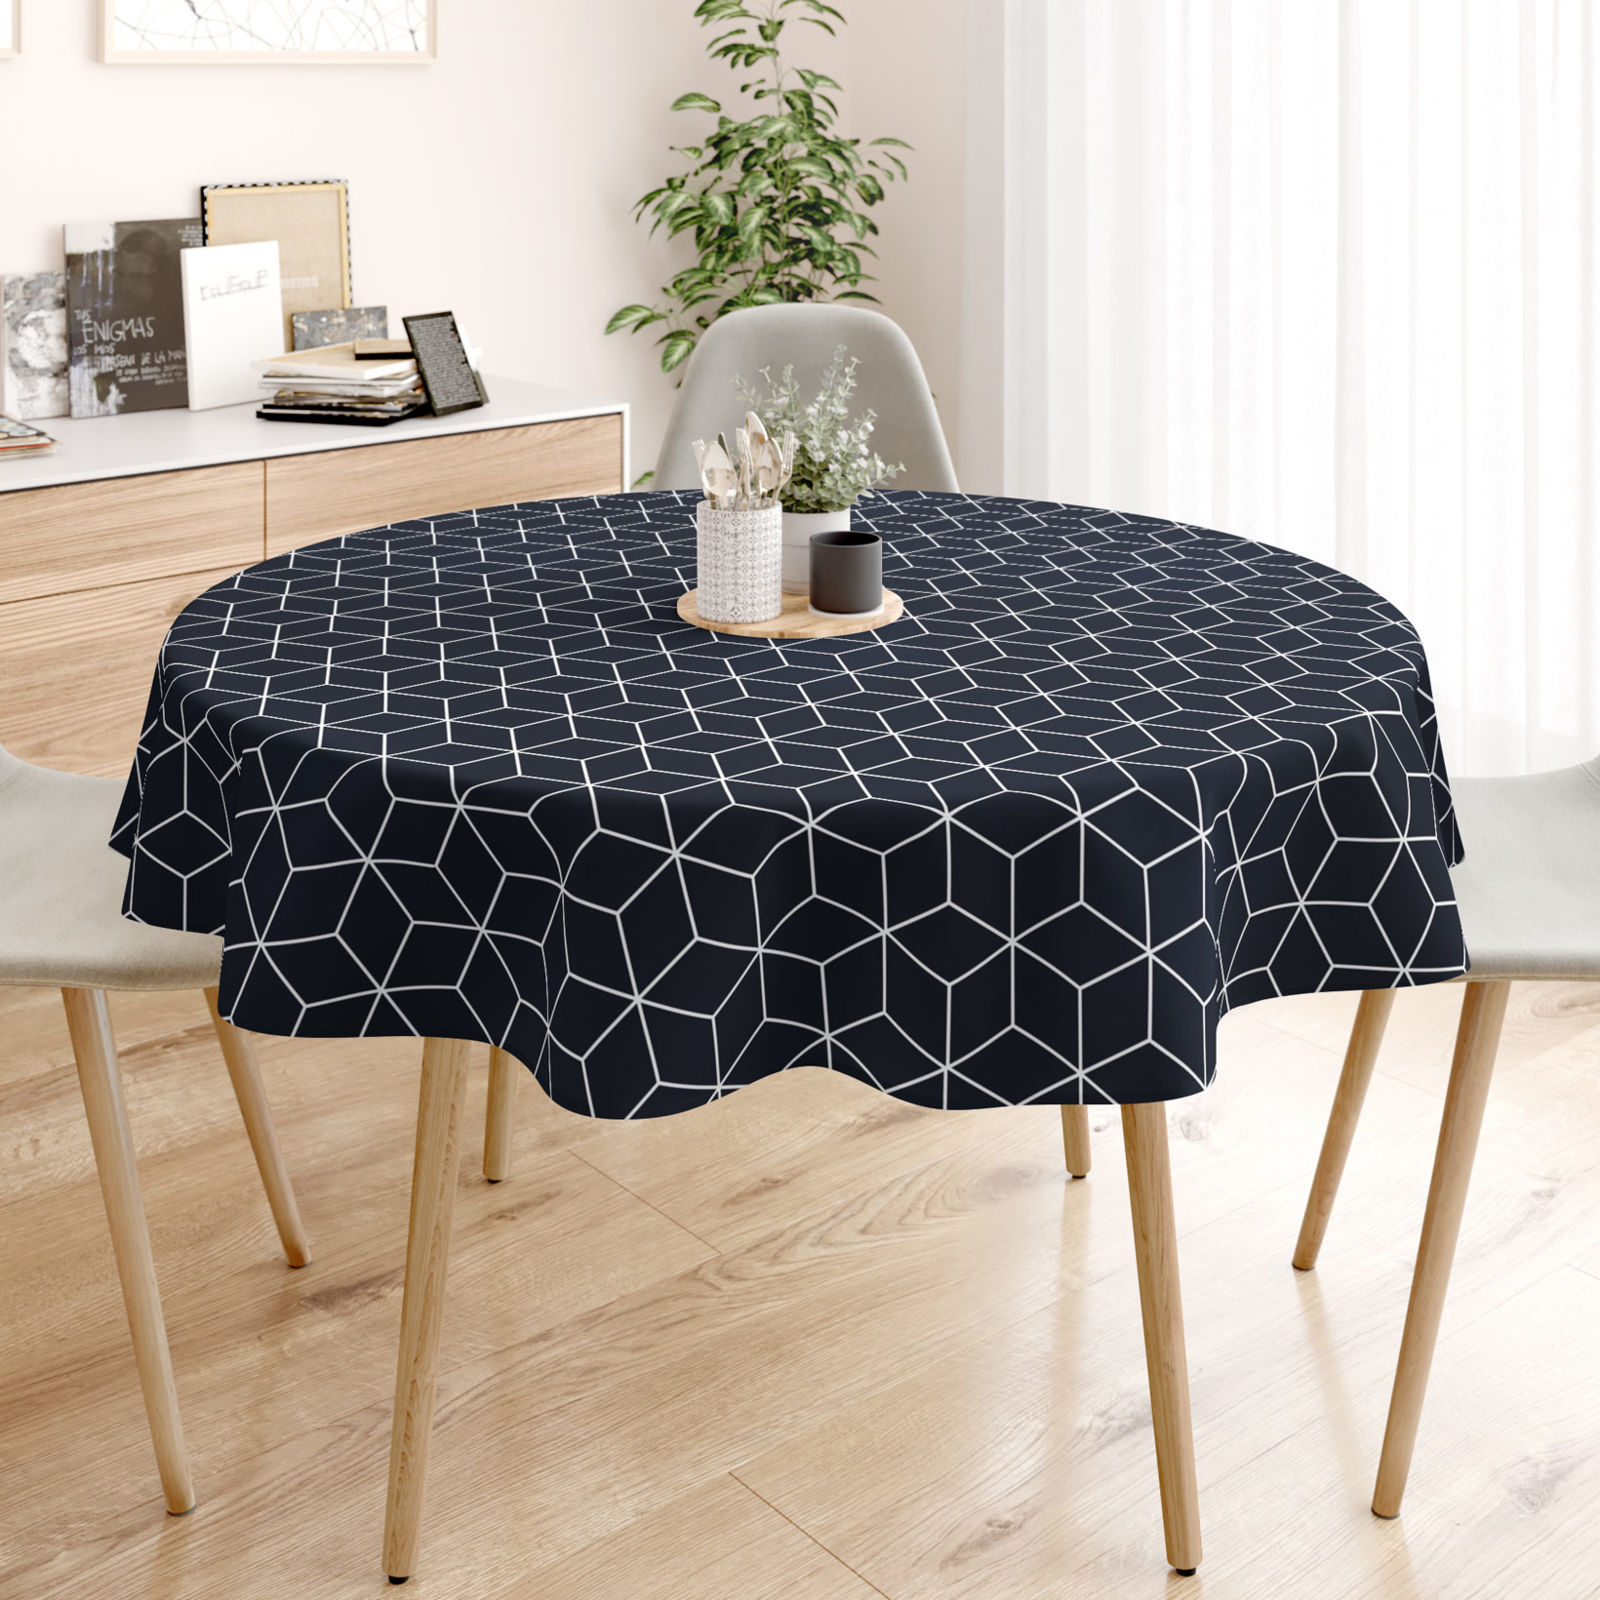 Pamut asztalterítő - mozaik mintás, sötétkék alapon - kör alakú